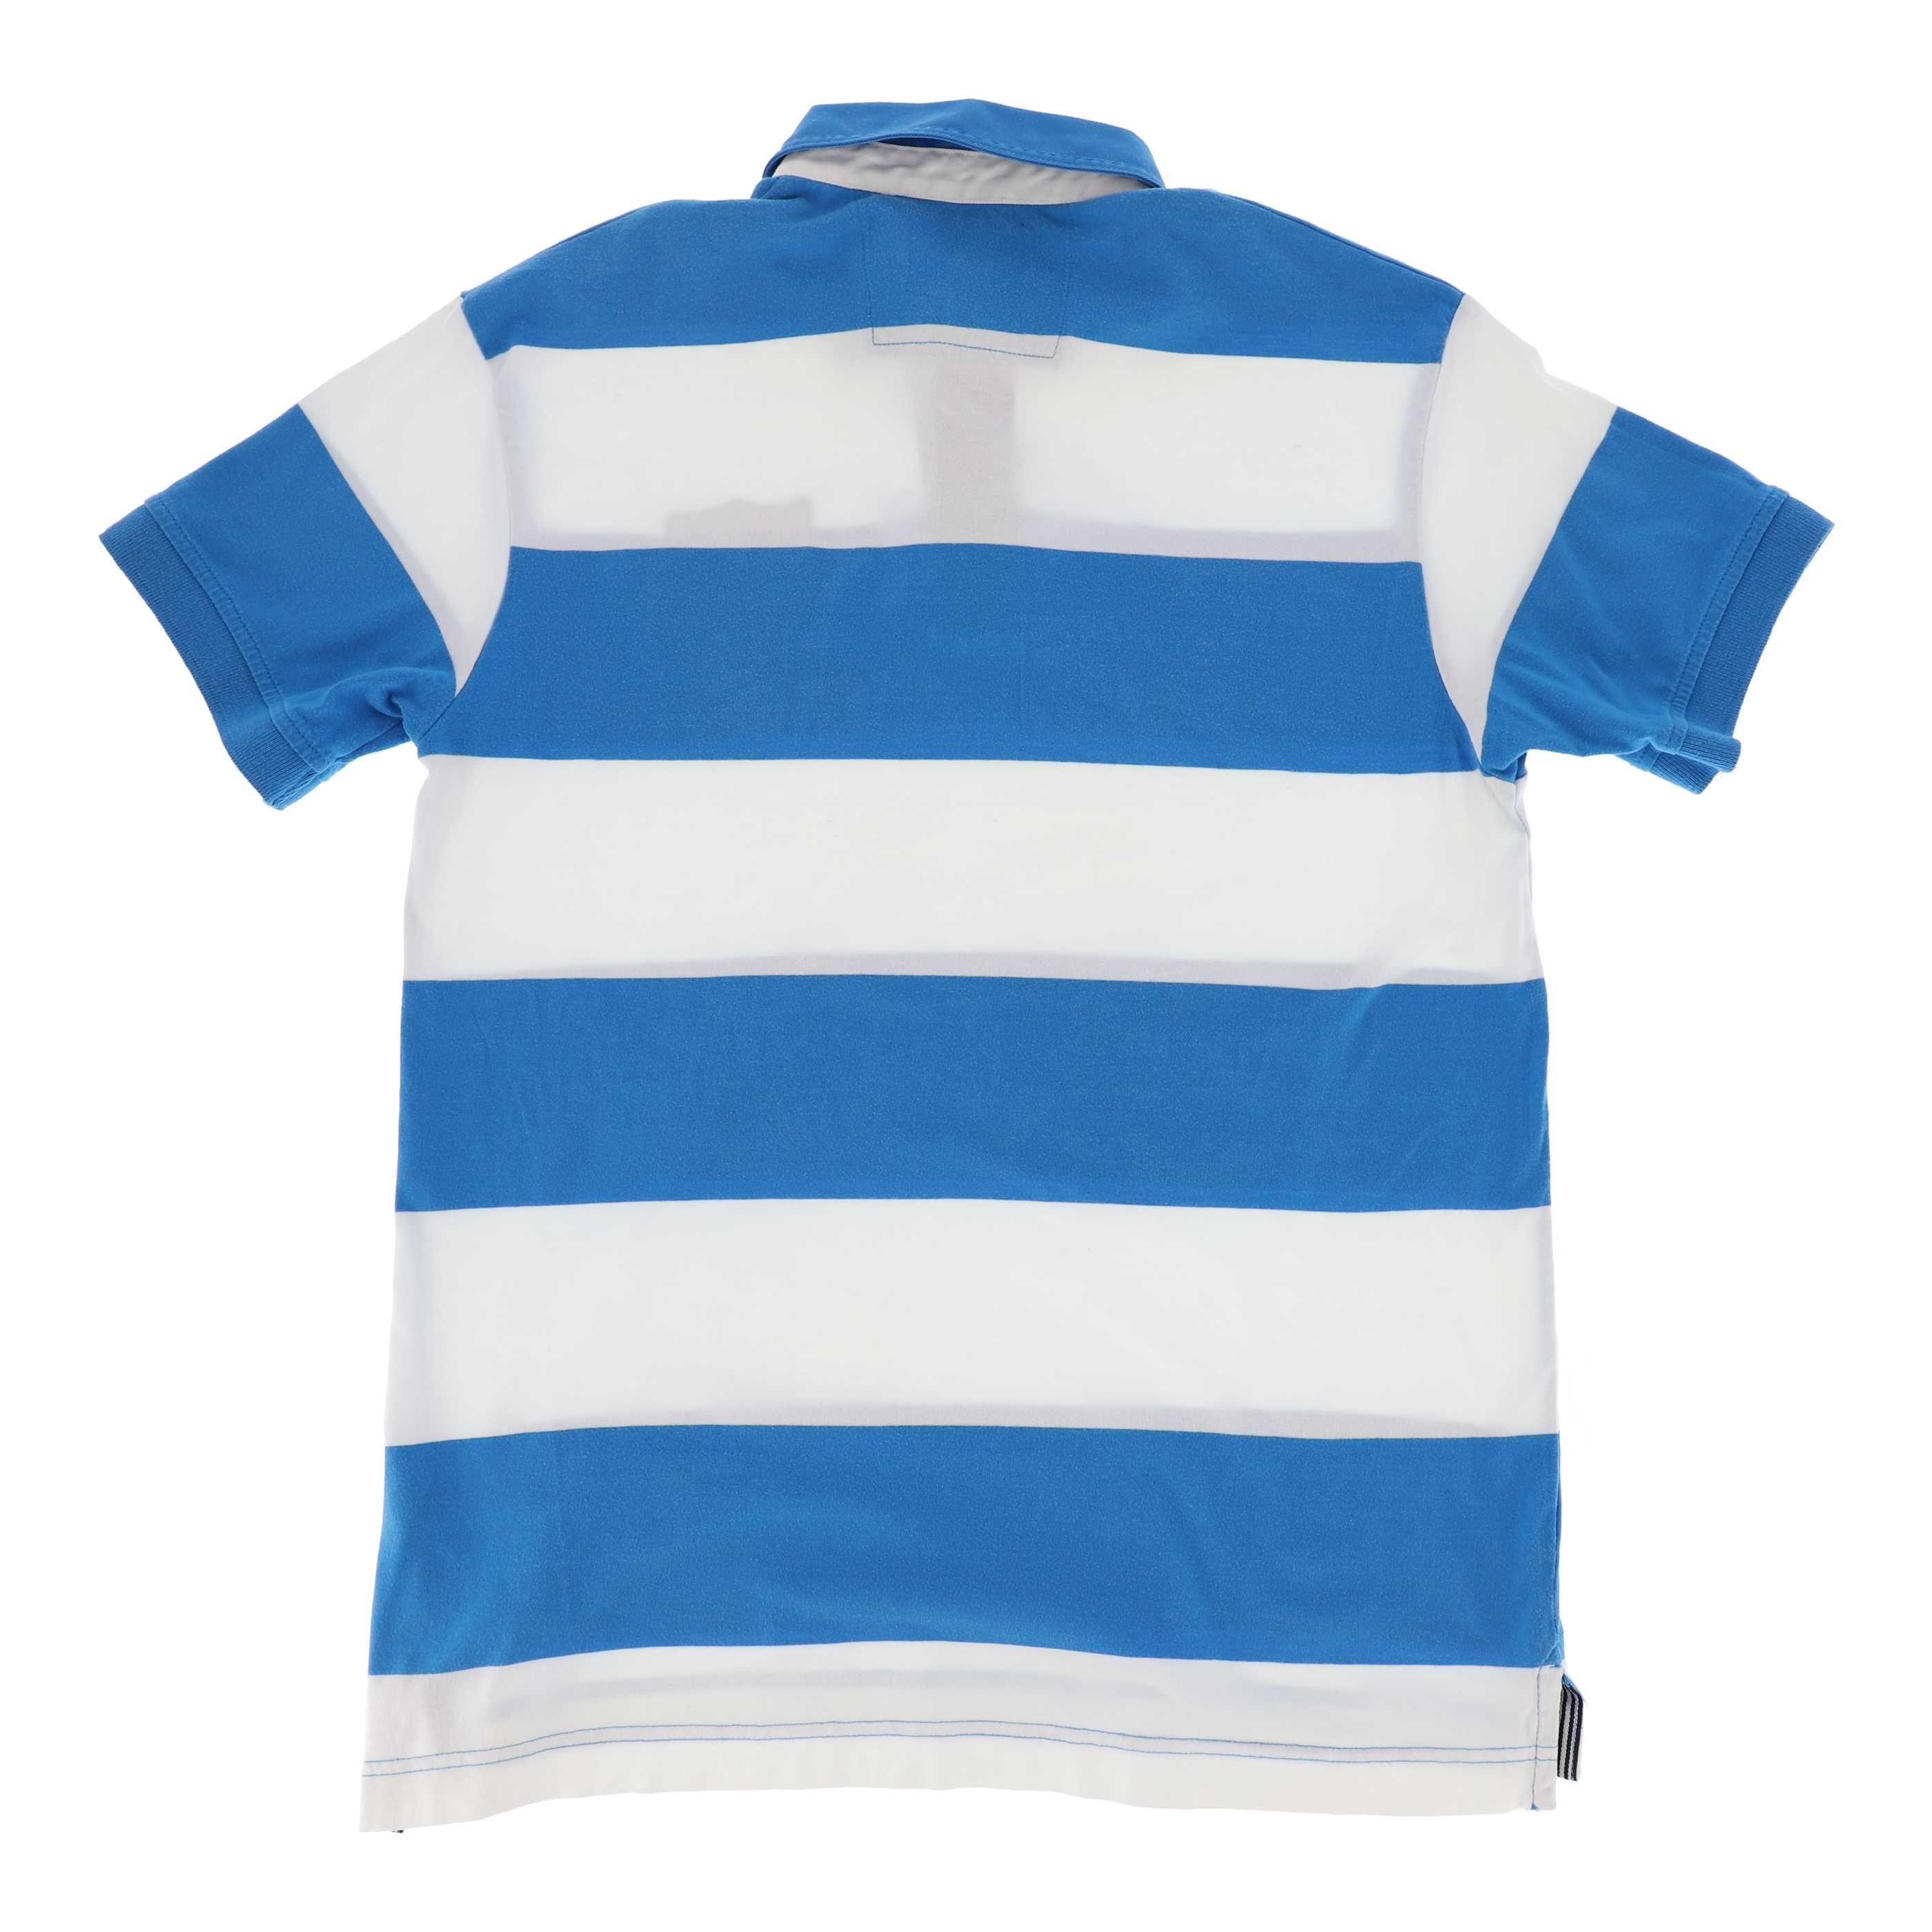 Koszulka polo w paski marki Hampton Republic, rozmiar 38